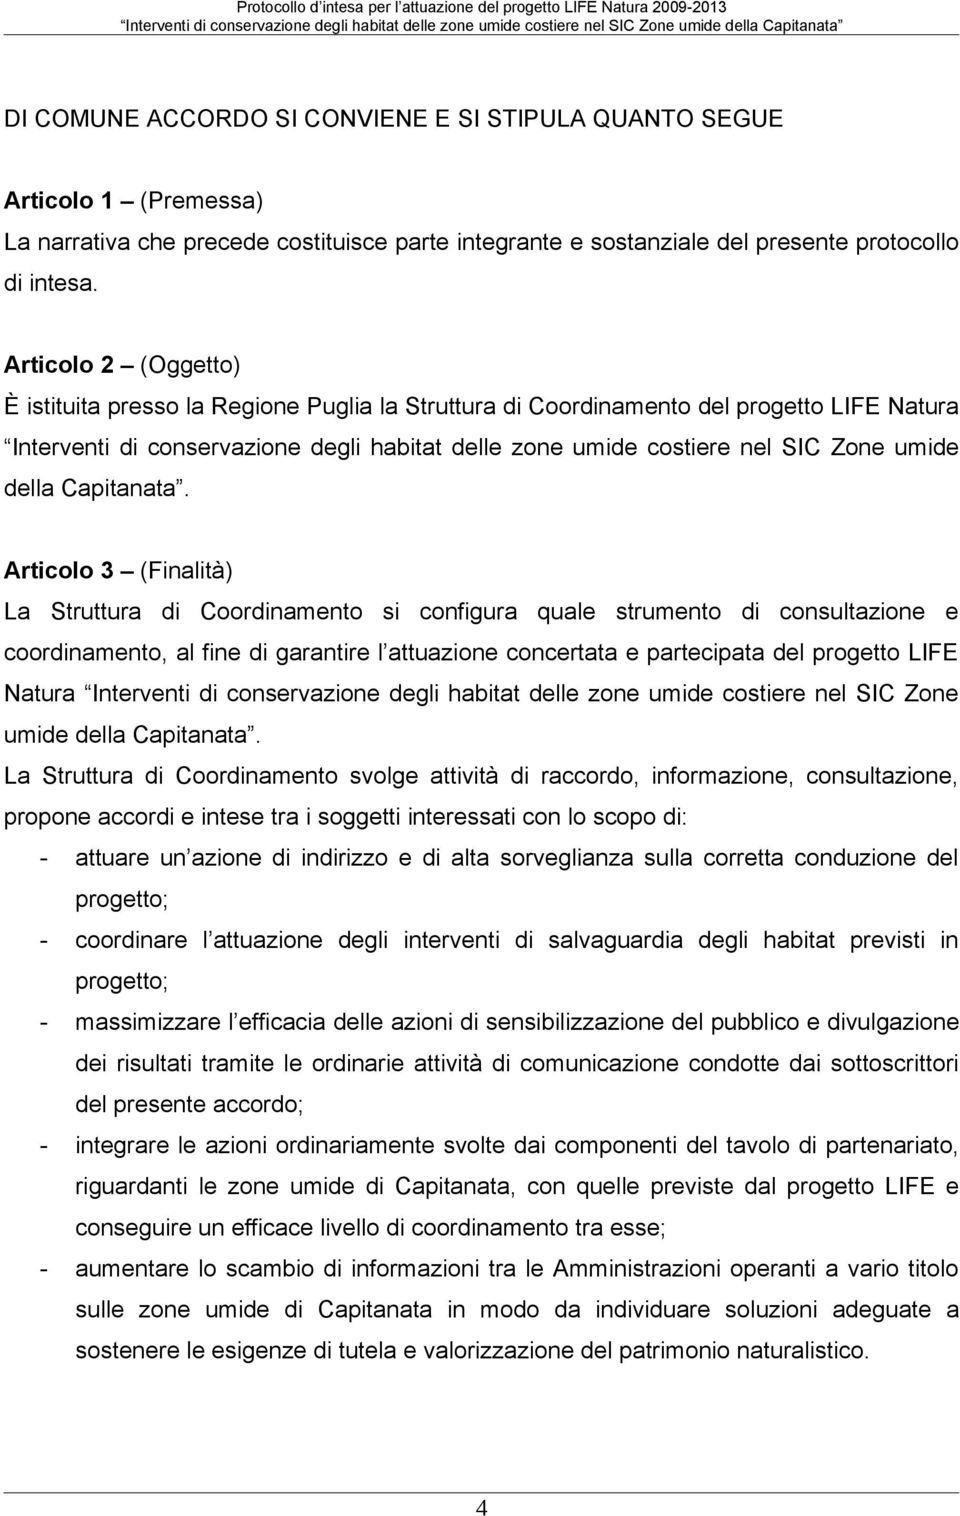 Articl 2 (Oggett) È istituita press la Regine Puglia la Struttura di Crdinament del prgett LIFE Natura Interventi di cnservazine degli habitat delle zne umide cstiere nel SIC Zne umide della